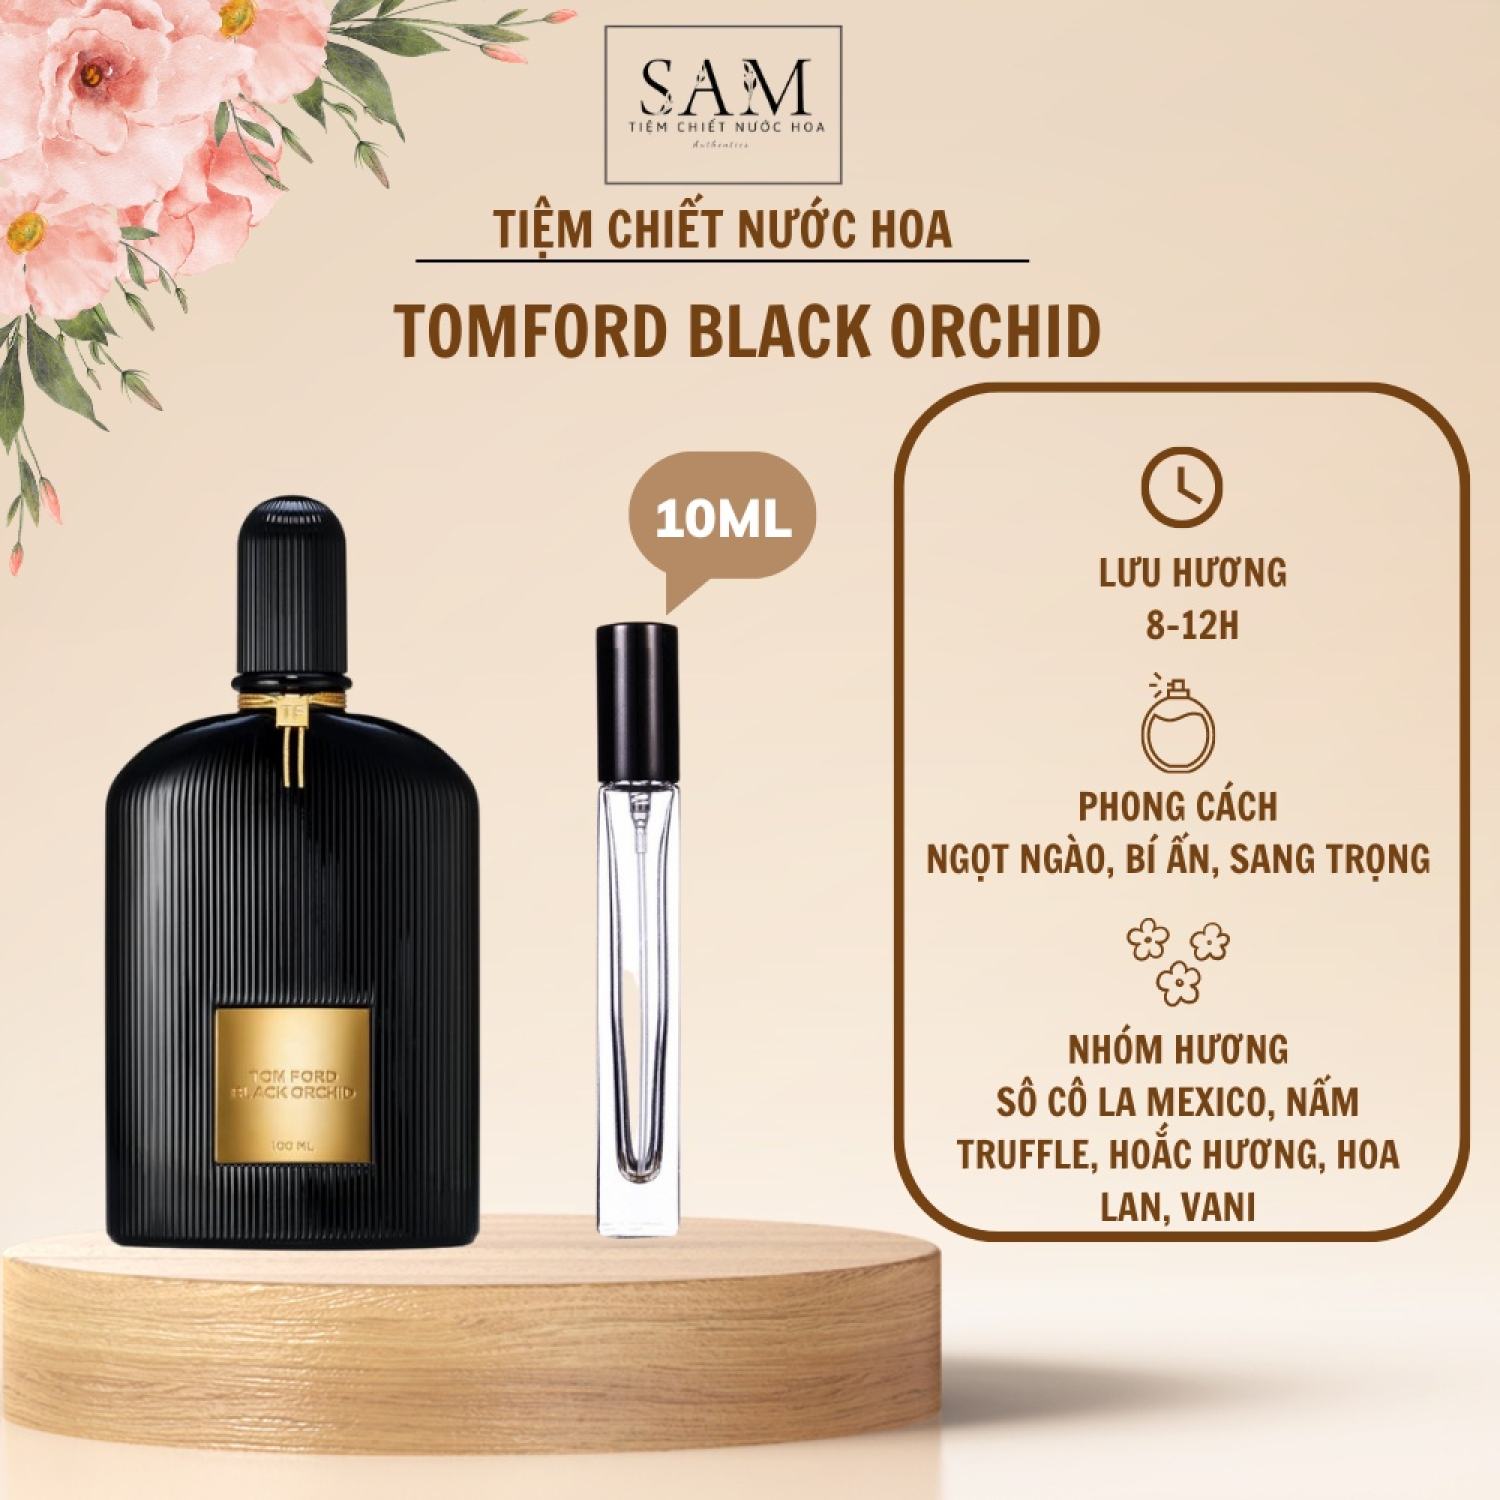 Nước Hoa Nam Nữ TF Black Orchid - Hương Thơm Bí ẩn, Hiện đại, Gợi cảm - S.A.M Perfume